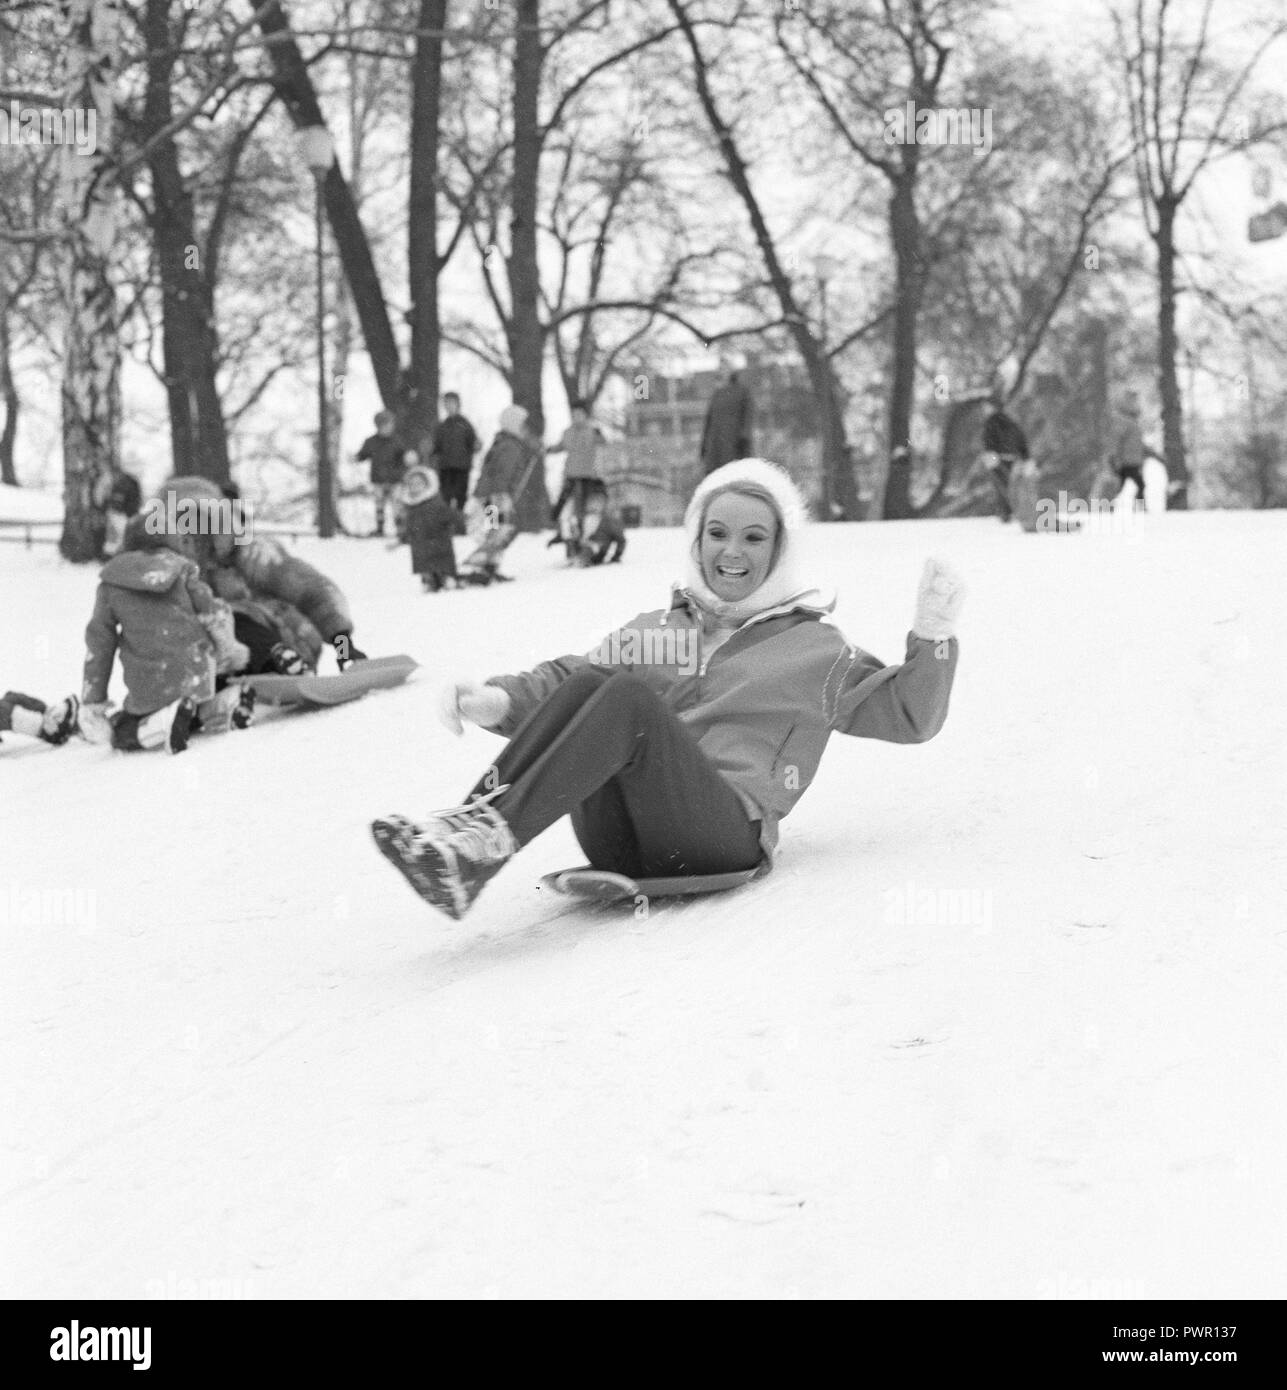 Winter in den 60er Jahren. Eine junge Frau ist Schiebetüren einen Hügel hinunter auf eine Untertasse förmig Kunststoff pulka. Sie ist im Sport Hose und ein Winter Jacke bekleidet. Schweden der 60er Jahre. Foto Kristoffersson ref EA 1-7 Stockfoto